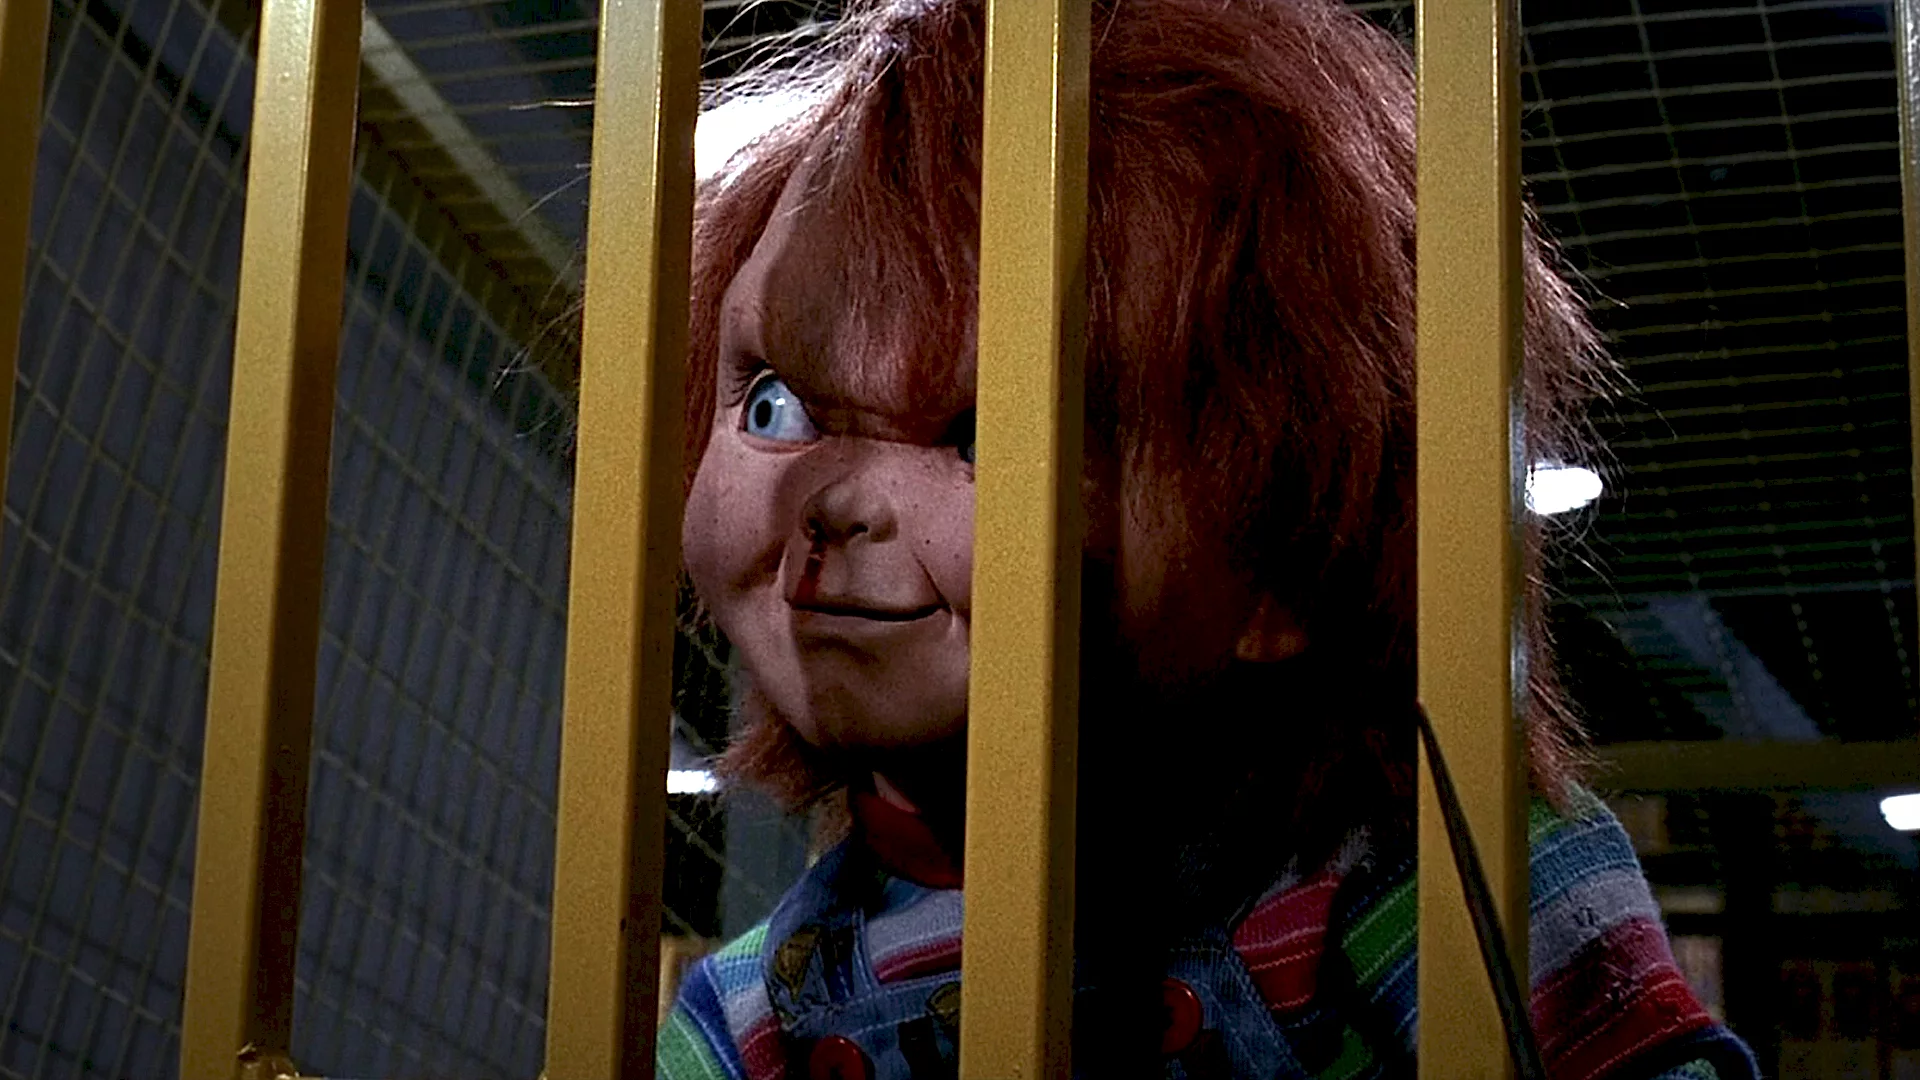 Photo du film : Chucky la poupee de sang